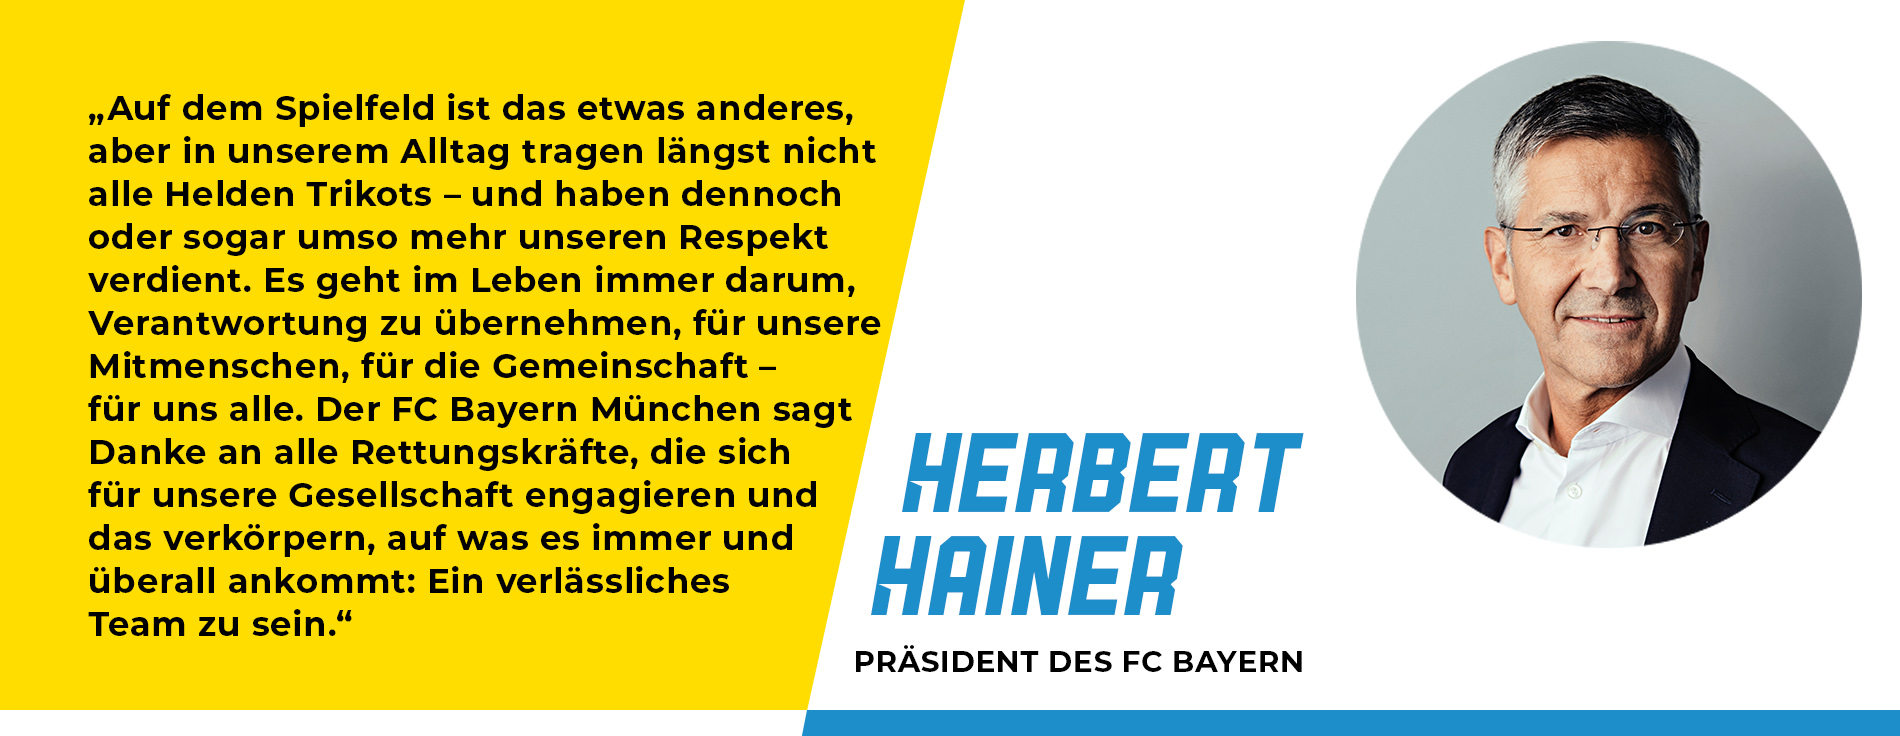 Statement von Herbert Hainer, Präsident des FC Bayern: „Auf dem Spielfeld ist das etwas anderes, aber in unserem Alltag tragen längst nicht alle Helden Trikots – und haben dennoch oder sogar umso mehr unseren Respekt verdient. Es geht im Leben immer darum, Verantwortung zu übernehmen, für unsere Mitmenschen, für die Gemeinschaft – für uns alle. Der FC Bayern München sagt Danke an alle Rettungskräfte, die sich für unsere Gesellschaft engagieren und das verkörpern, auf was es immer und überall ankommt: Ein verlässliches Team zu sein.“ 